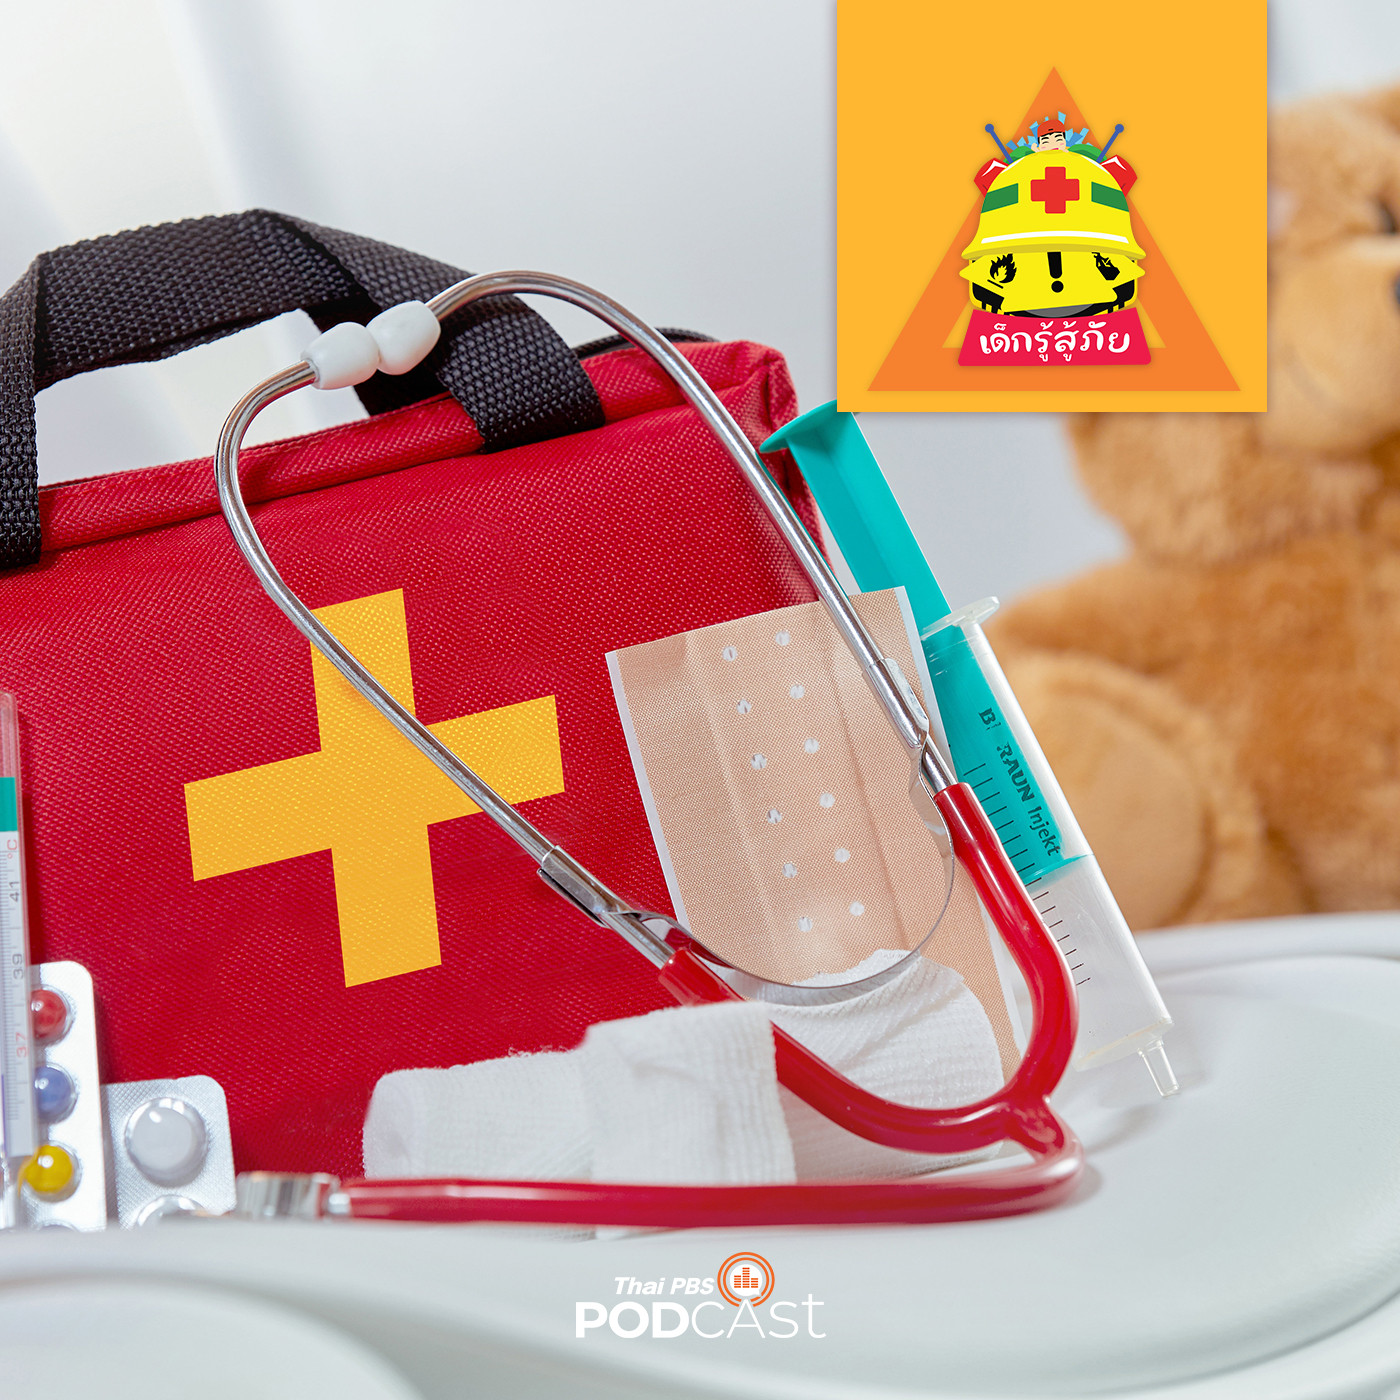 EP. 95:  First Aid เรียนรู้การปฐมพยาบาลอย่างไรให้ปลอดภัย